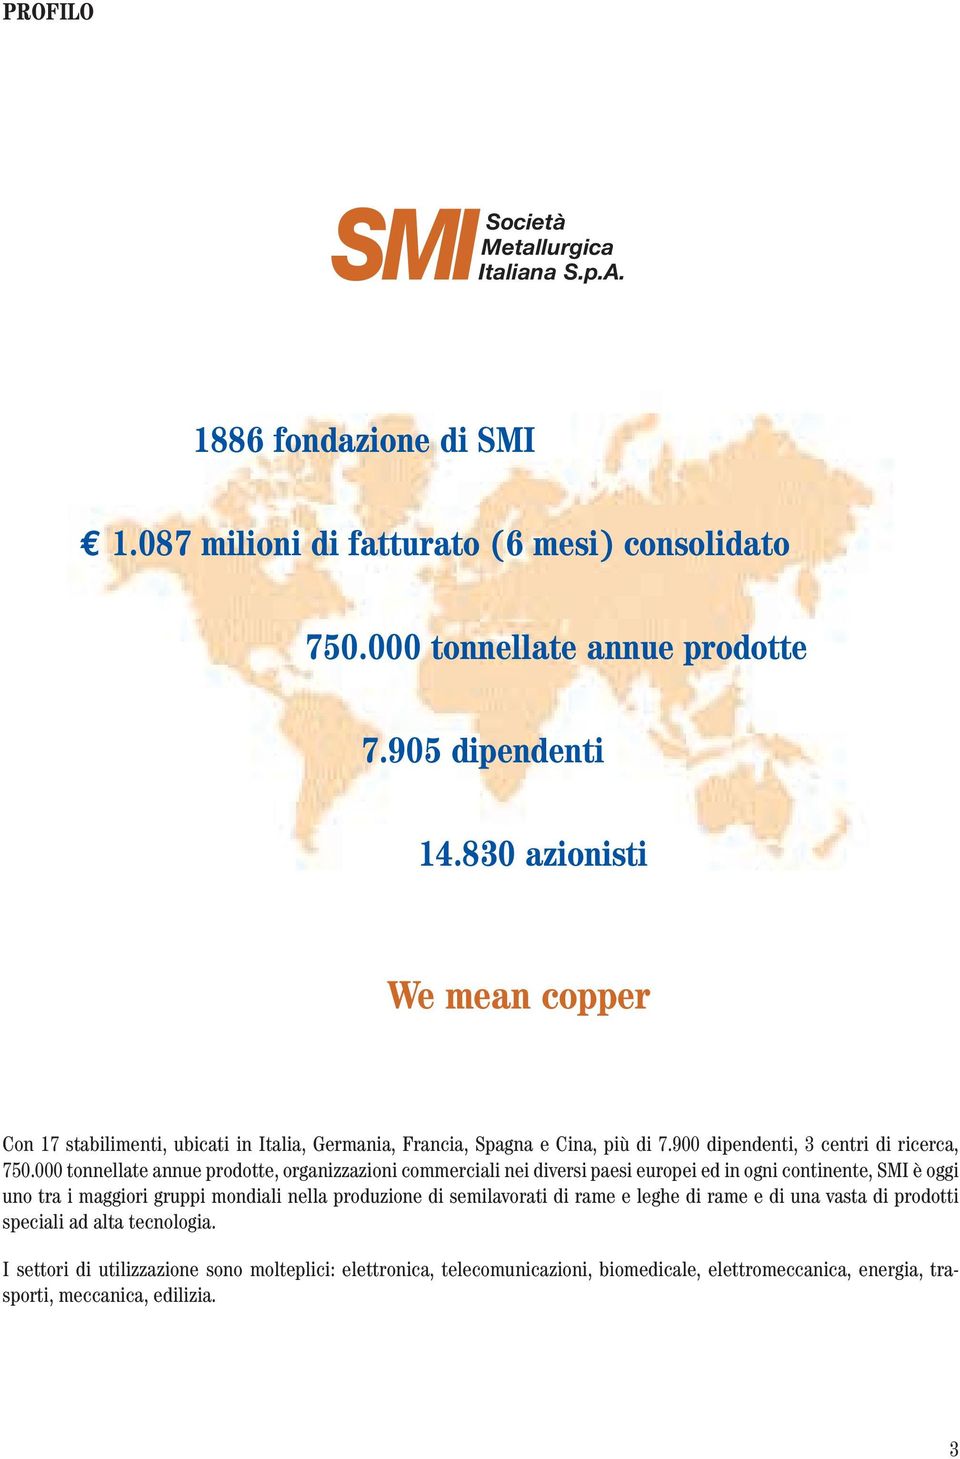 000 tonnellate annue prodotte, organizzazioni commerciali nei diversi paesi europei ed in ogni continente, SMI è oggi uno tra i maggiori gruppi mondiali nella produzione di semilavorati